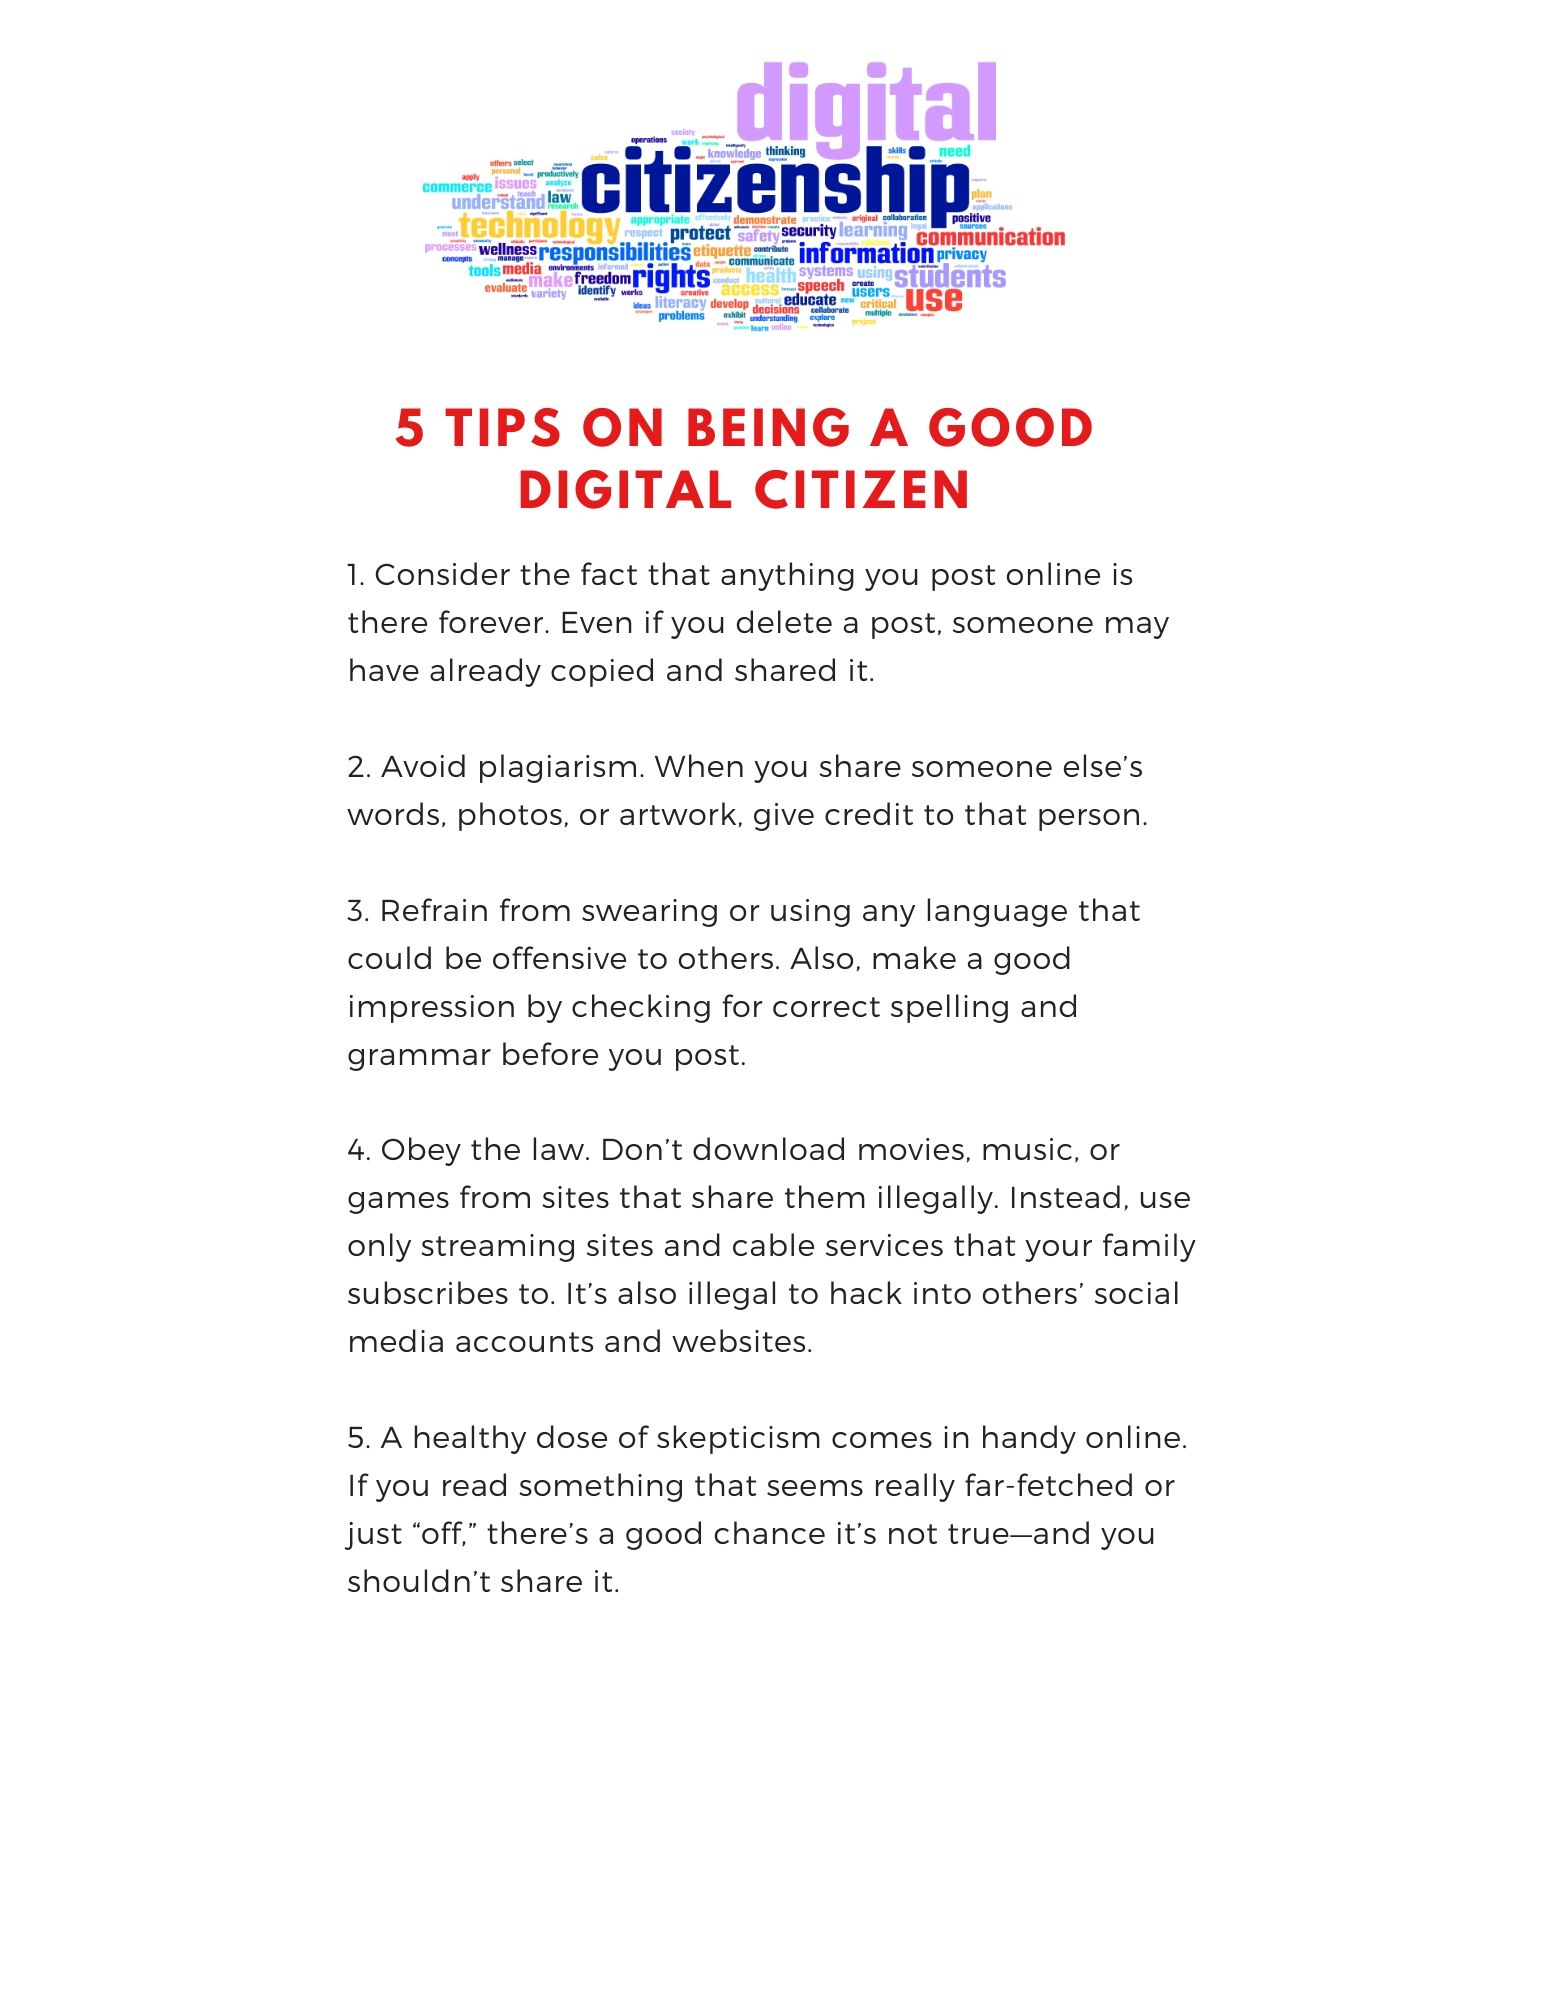 5 Tips on begin a good digital citizen